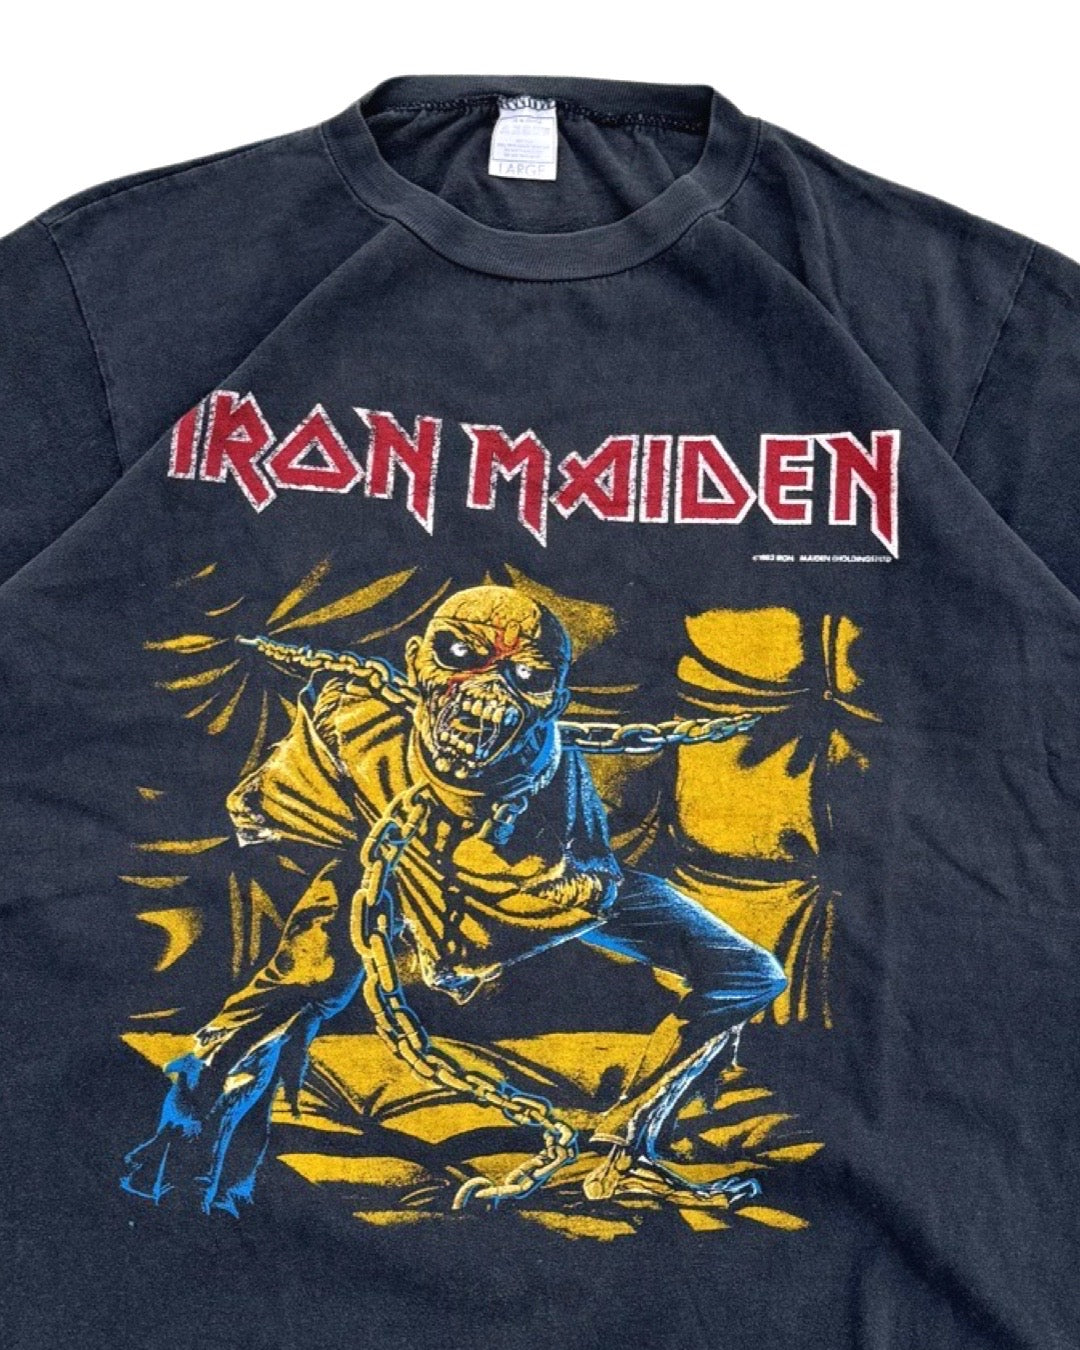 Vintage Iron Maiden 83 Tee - L